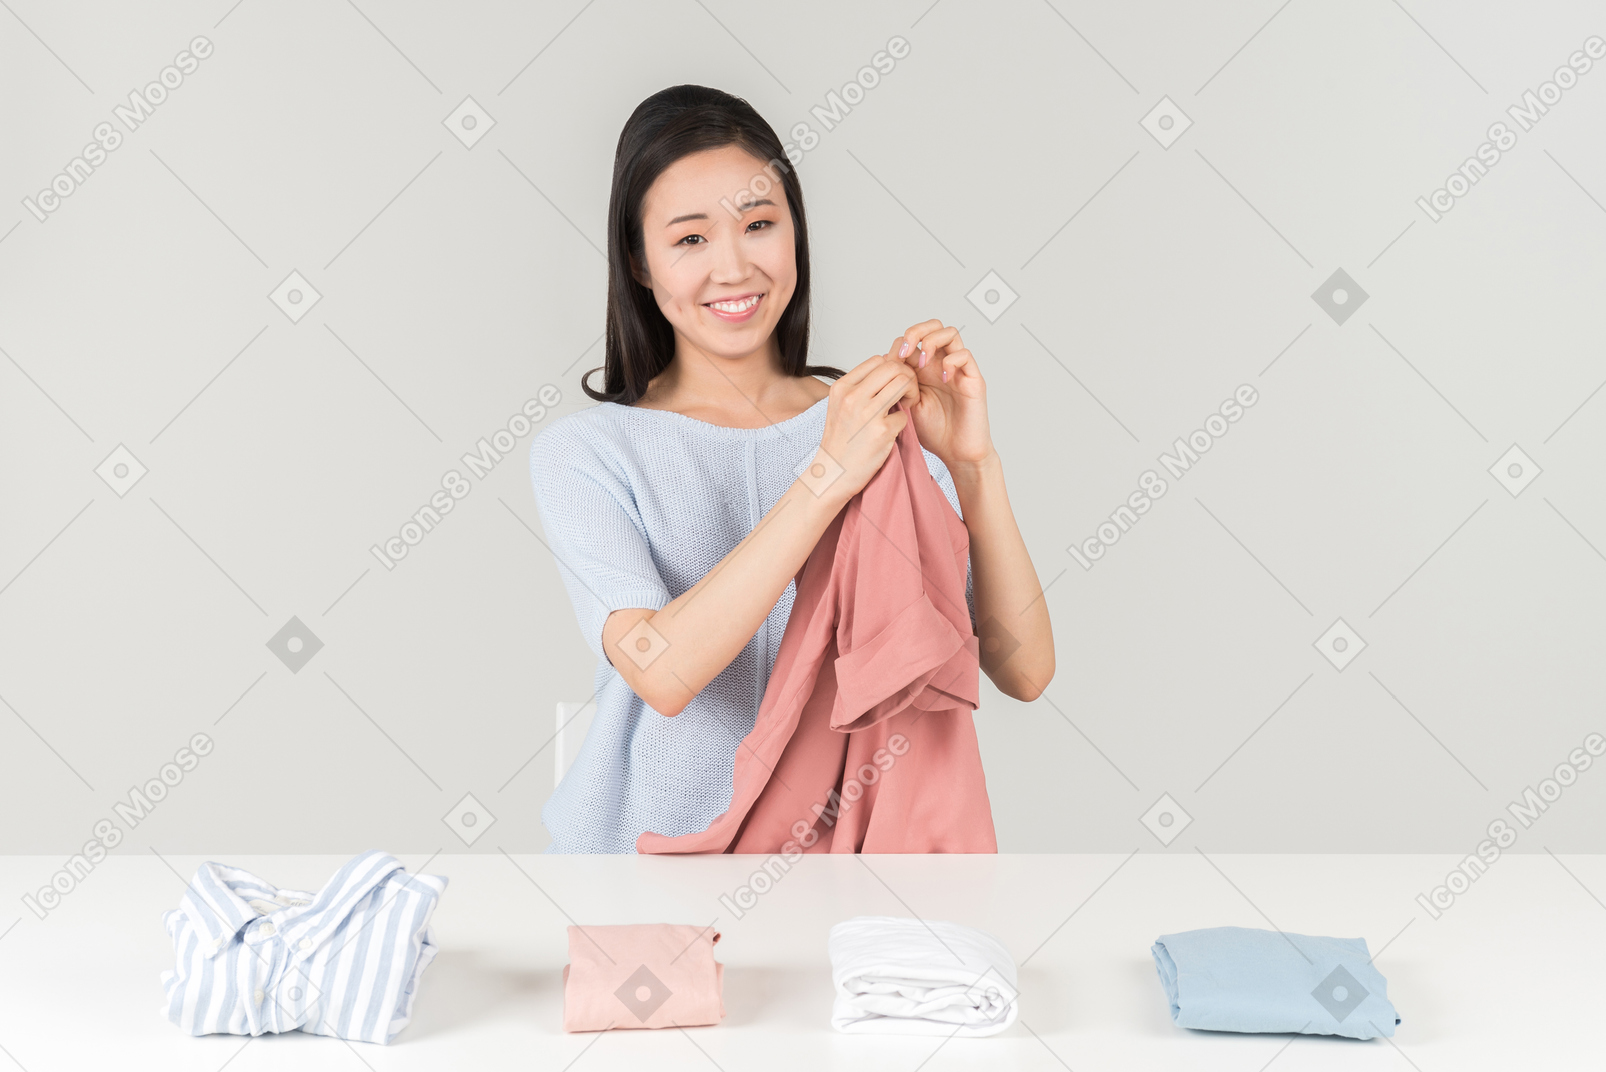 Esta camisa estava branca antes de eu decidir que lavá-la com minha blusa rosa soa como uma boa ideia